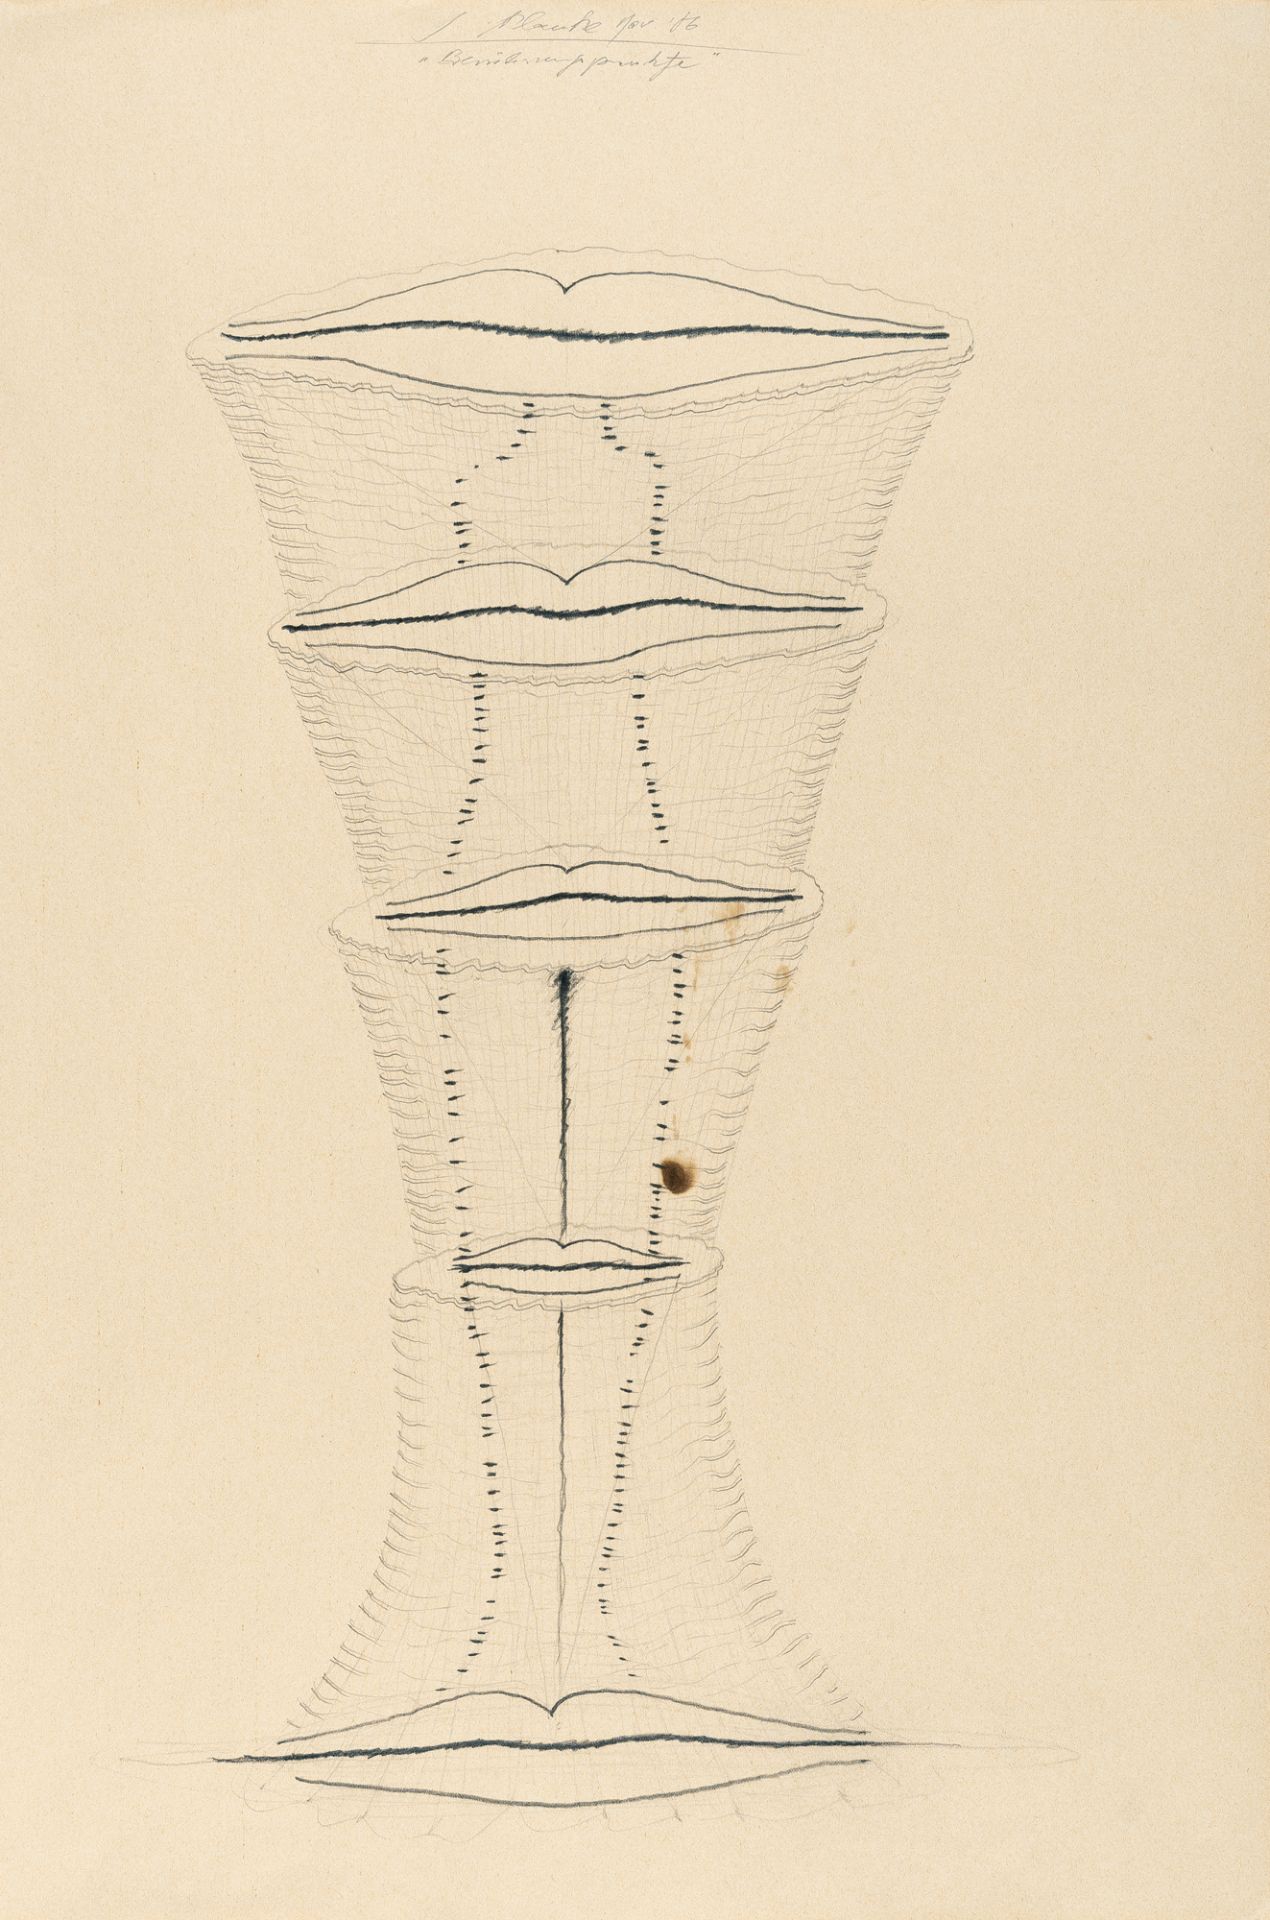 Jürgen Klauke (1943 Cochem), “Points of Contact”Pencil on laid paper. (19)86. Ca. 57 x 40 cm.